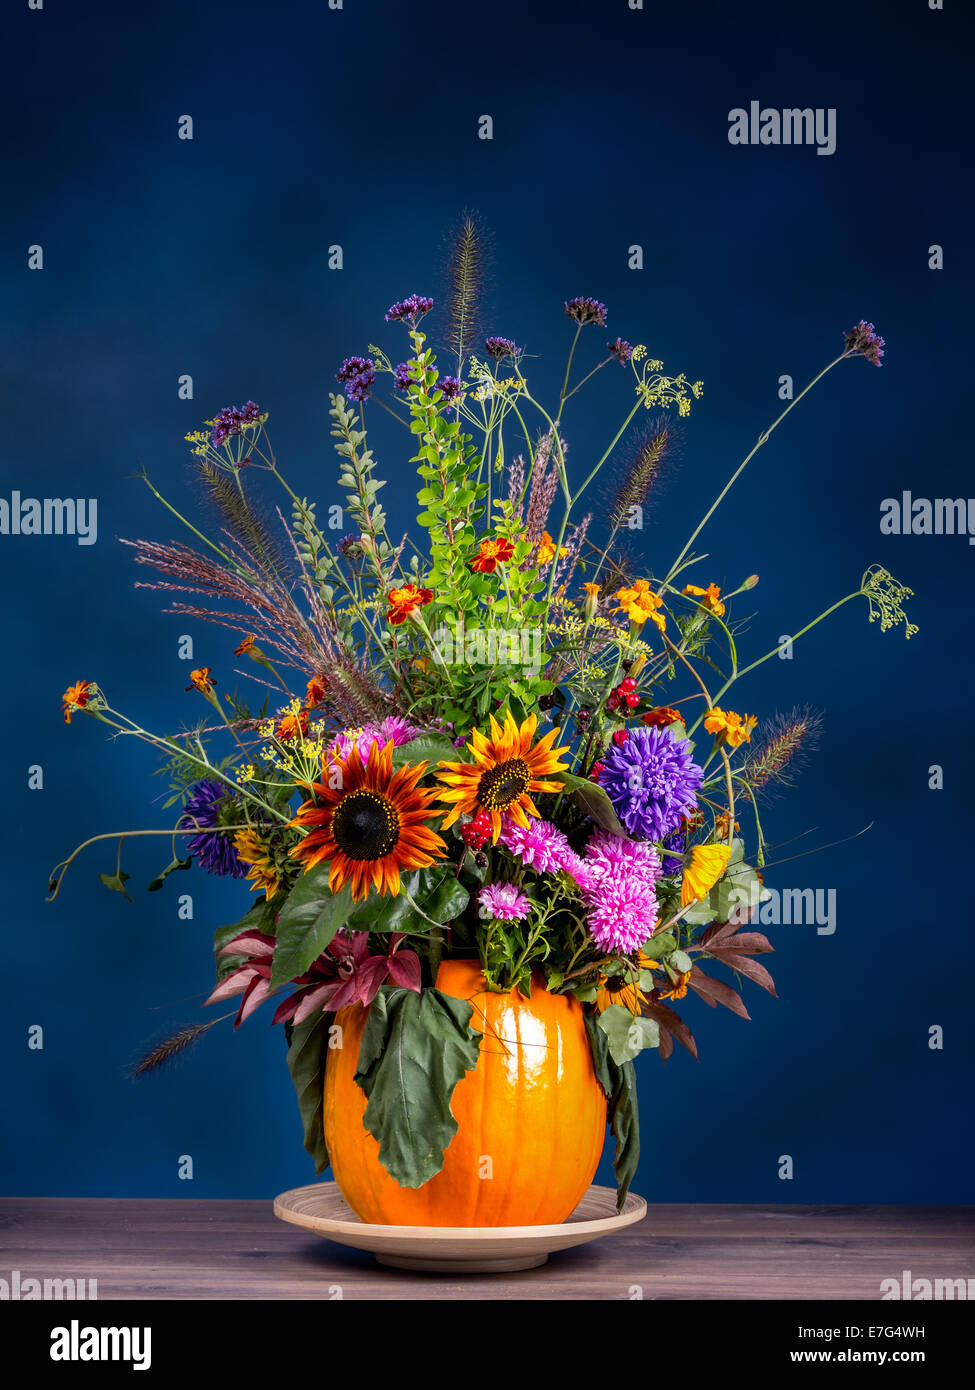 Bouquet de fleurs sauvages en vase citrouille sculptée sur fond bleu foncé Banque D'Images